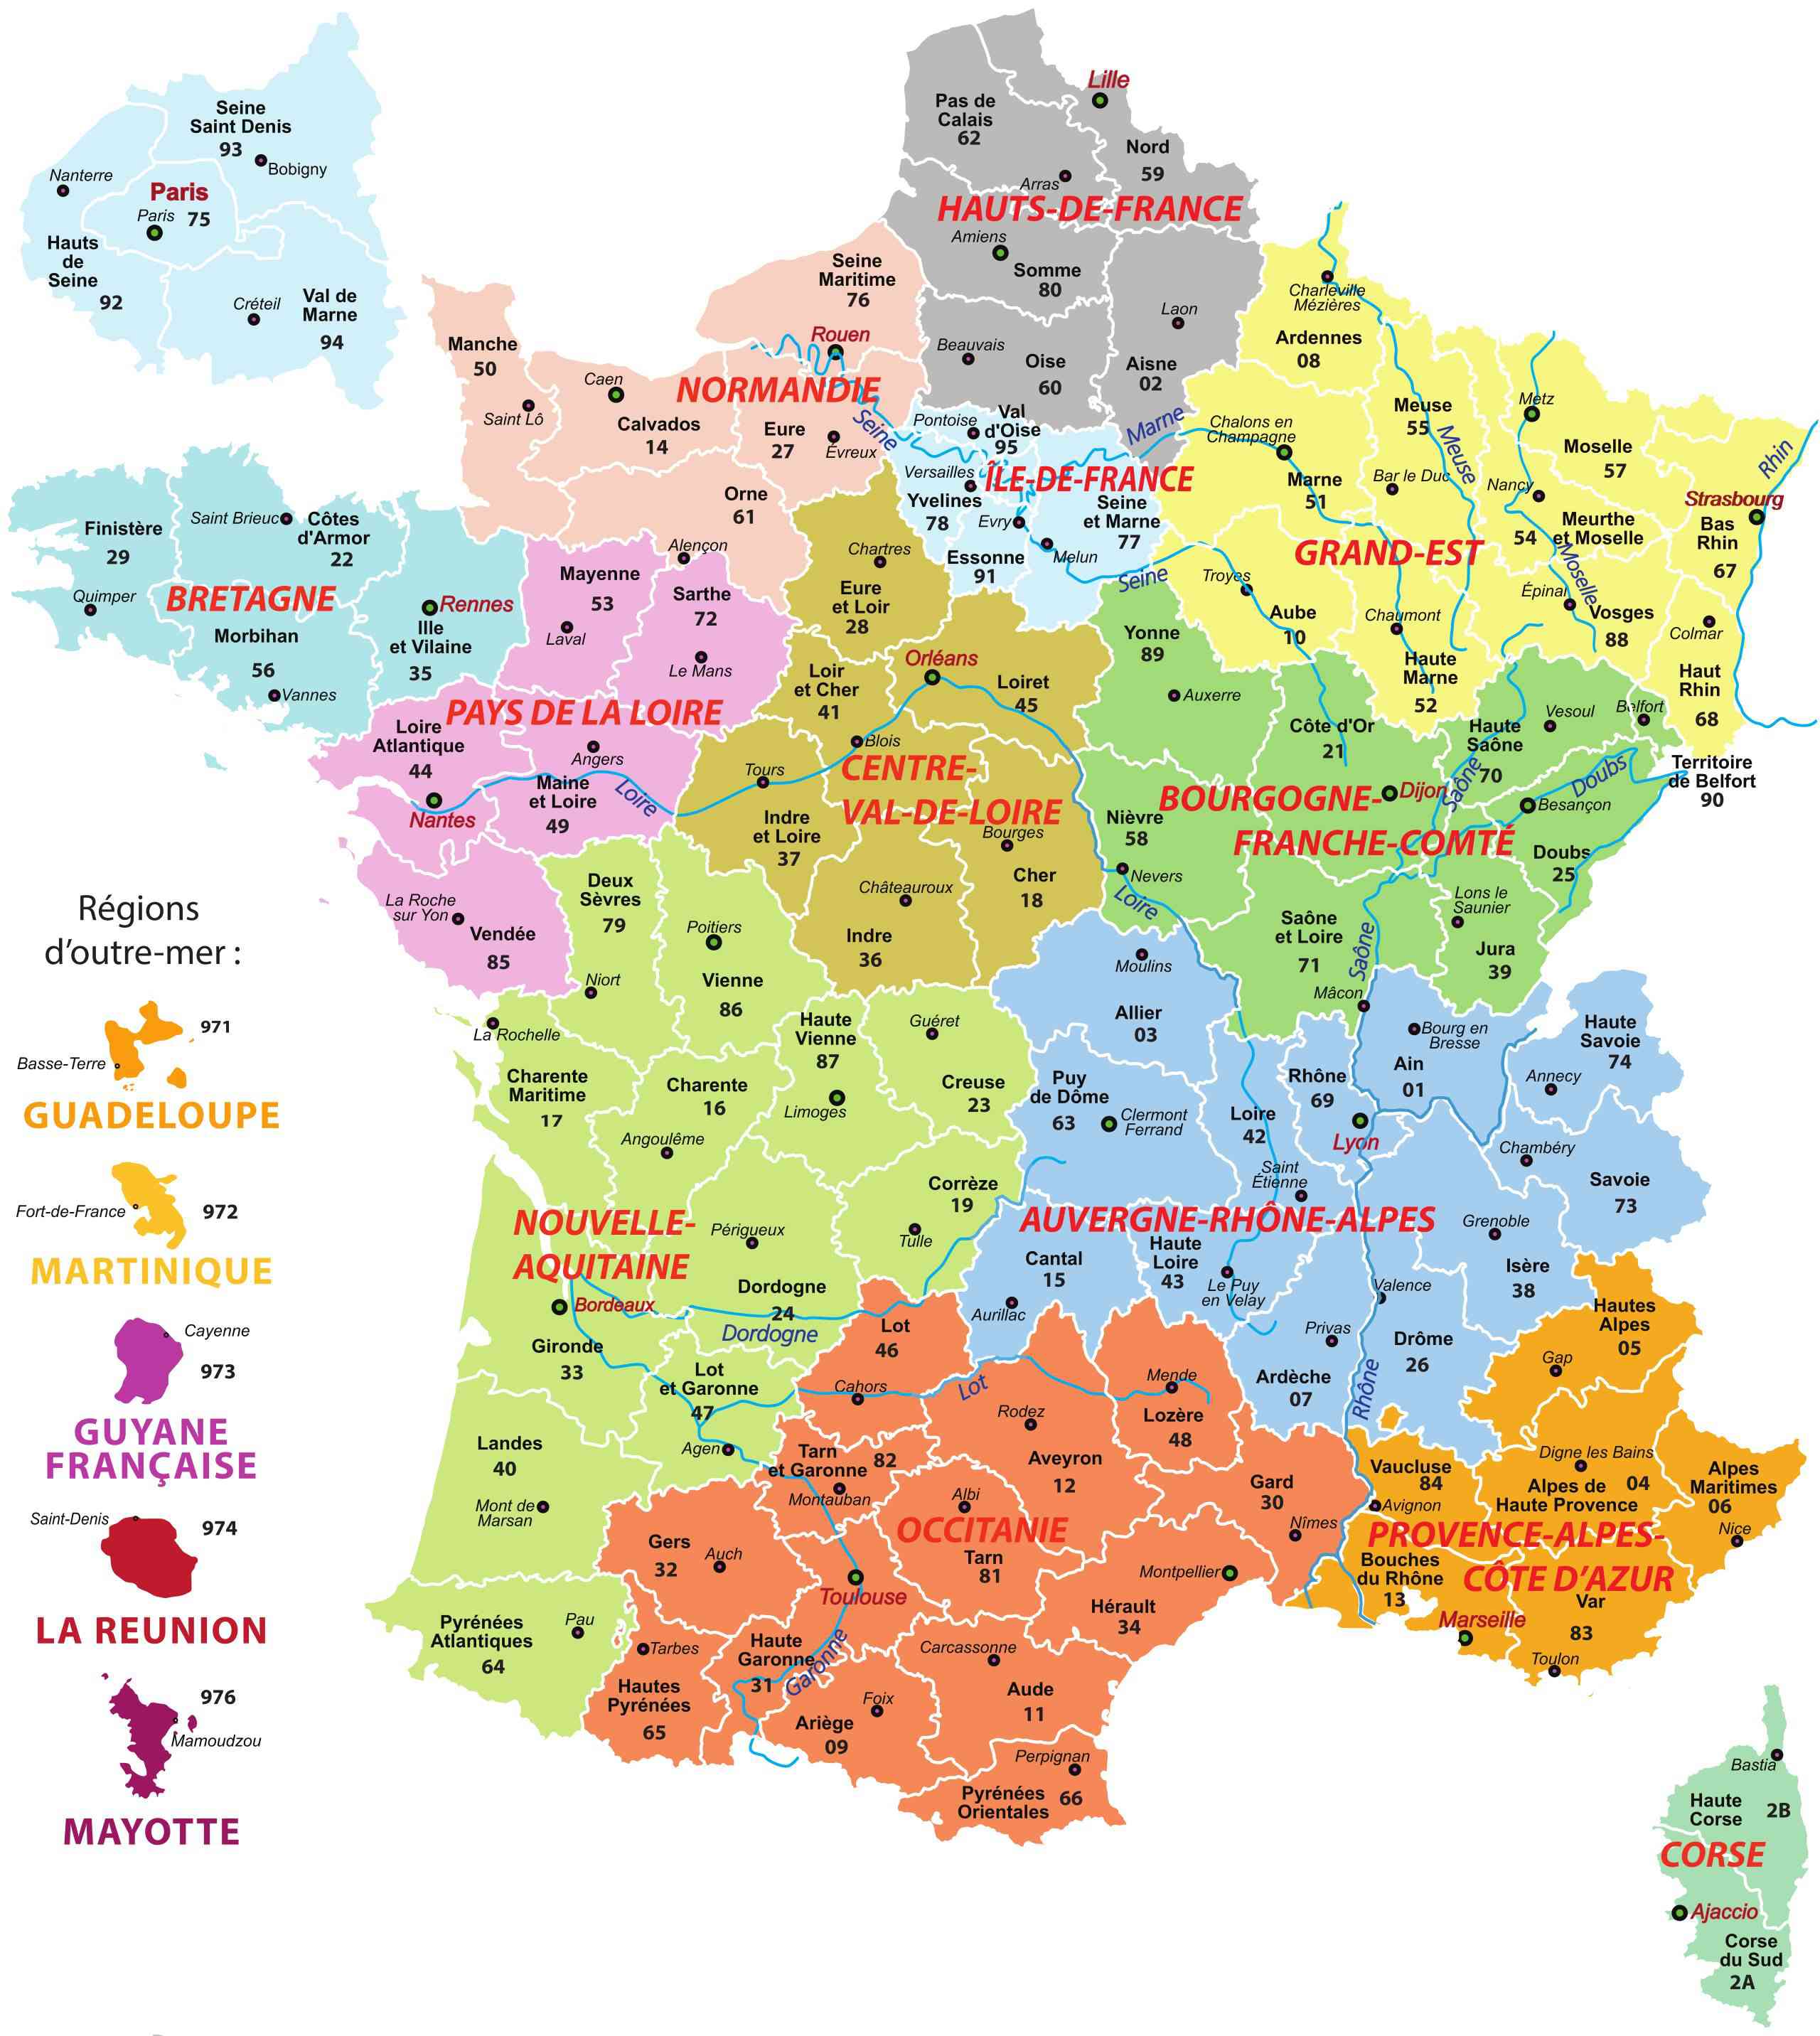 carte de france departements villes et regions